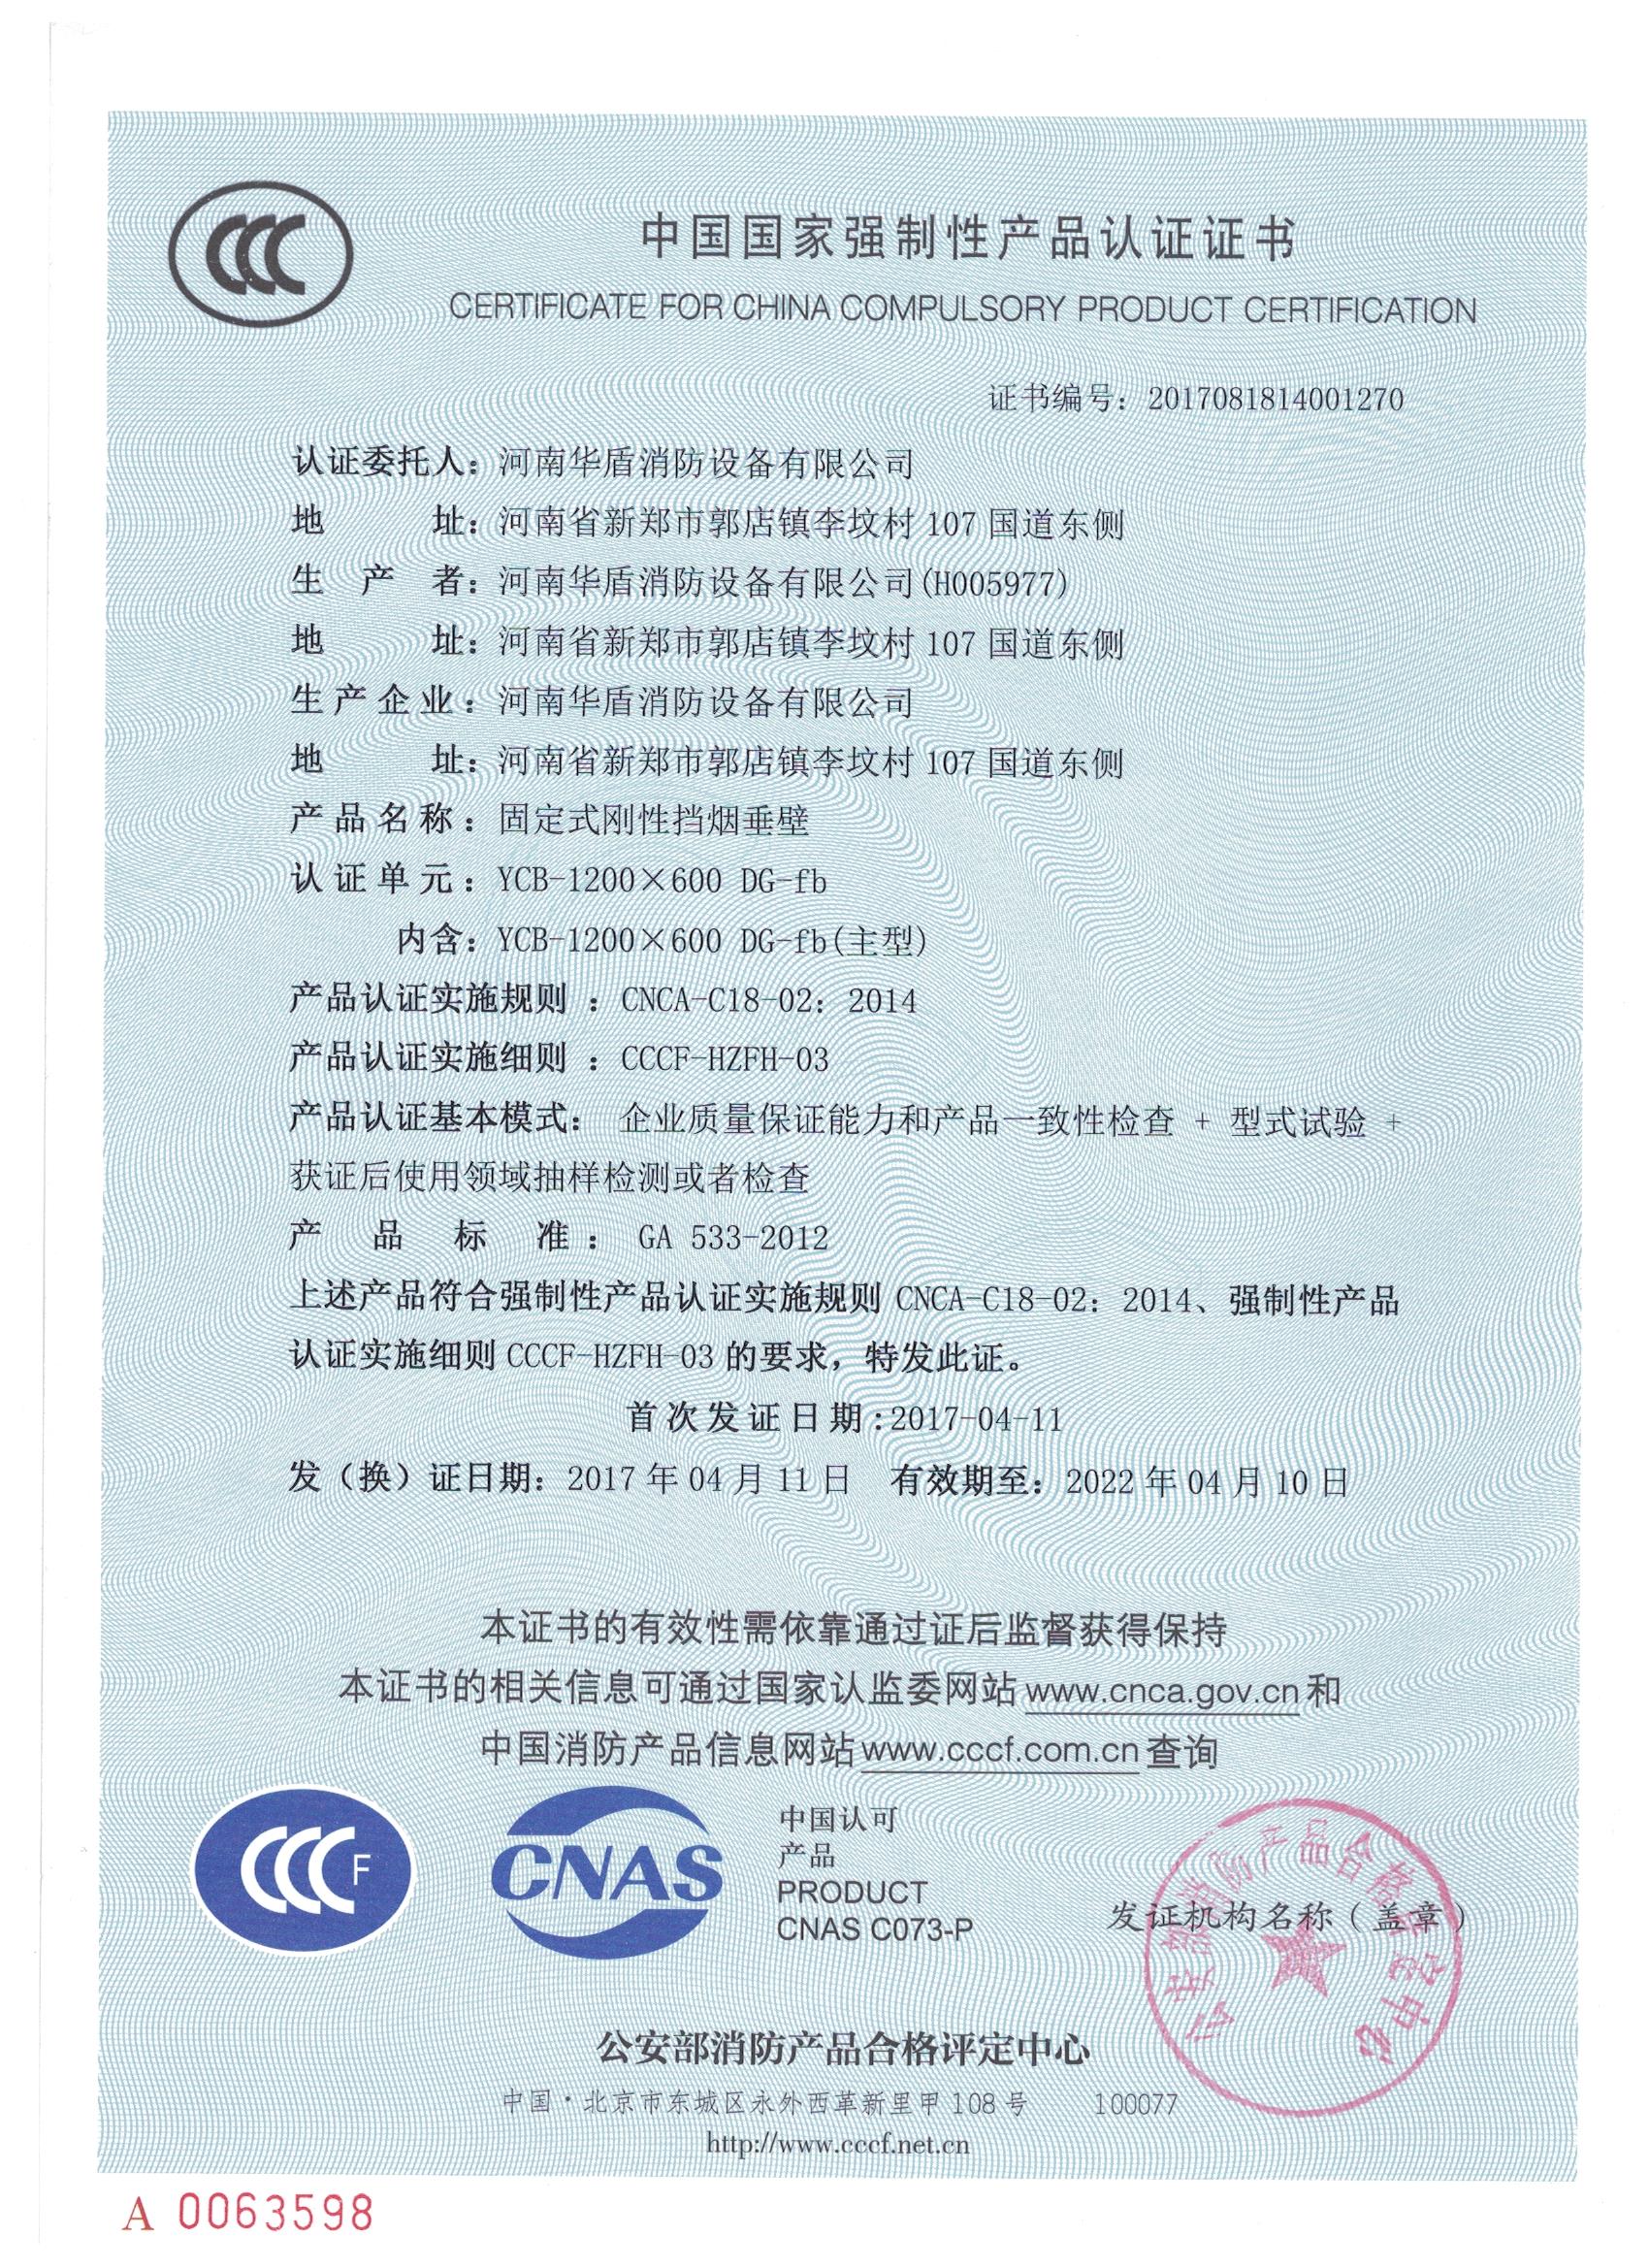 信阳YCB-1200X600 DG-fb-3C证书